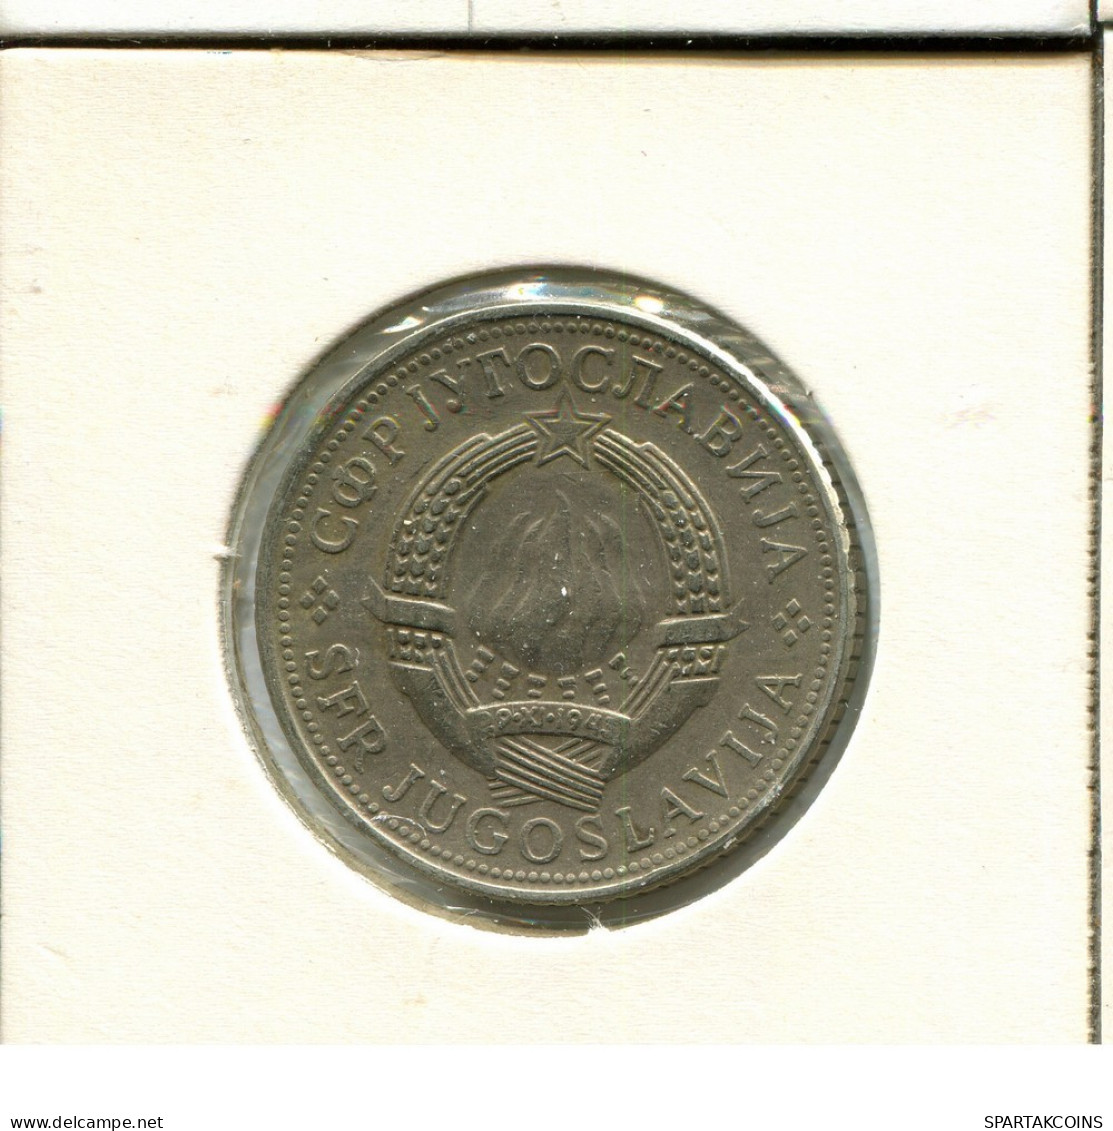 5 DINARA 1974 YUGOSLAVIA Moneda #AV150.E.A - Jugoslawien